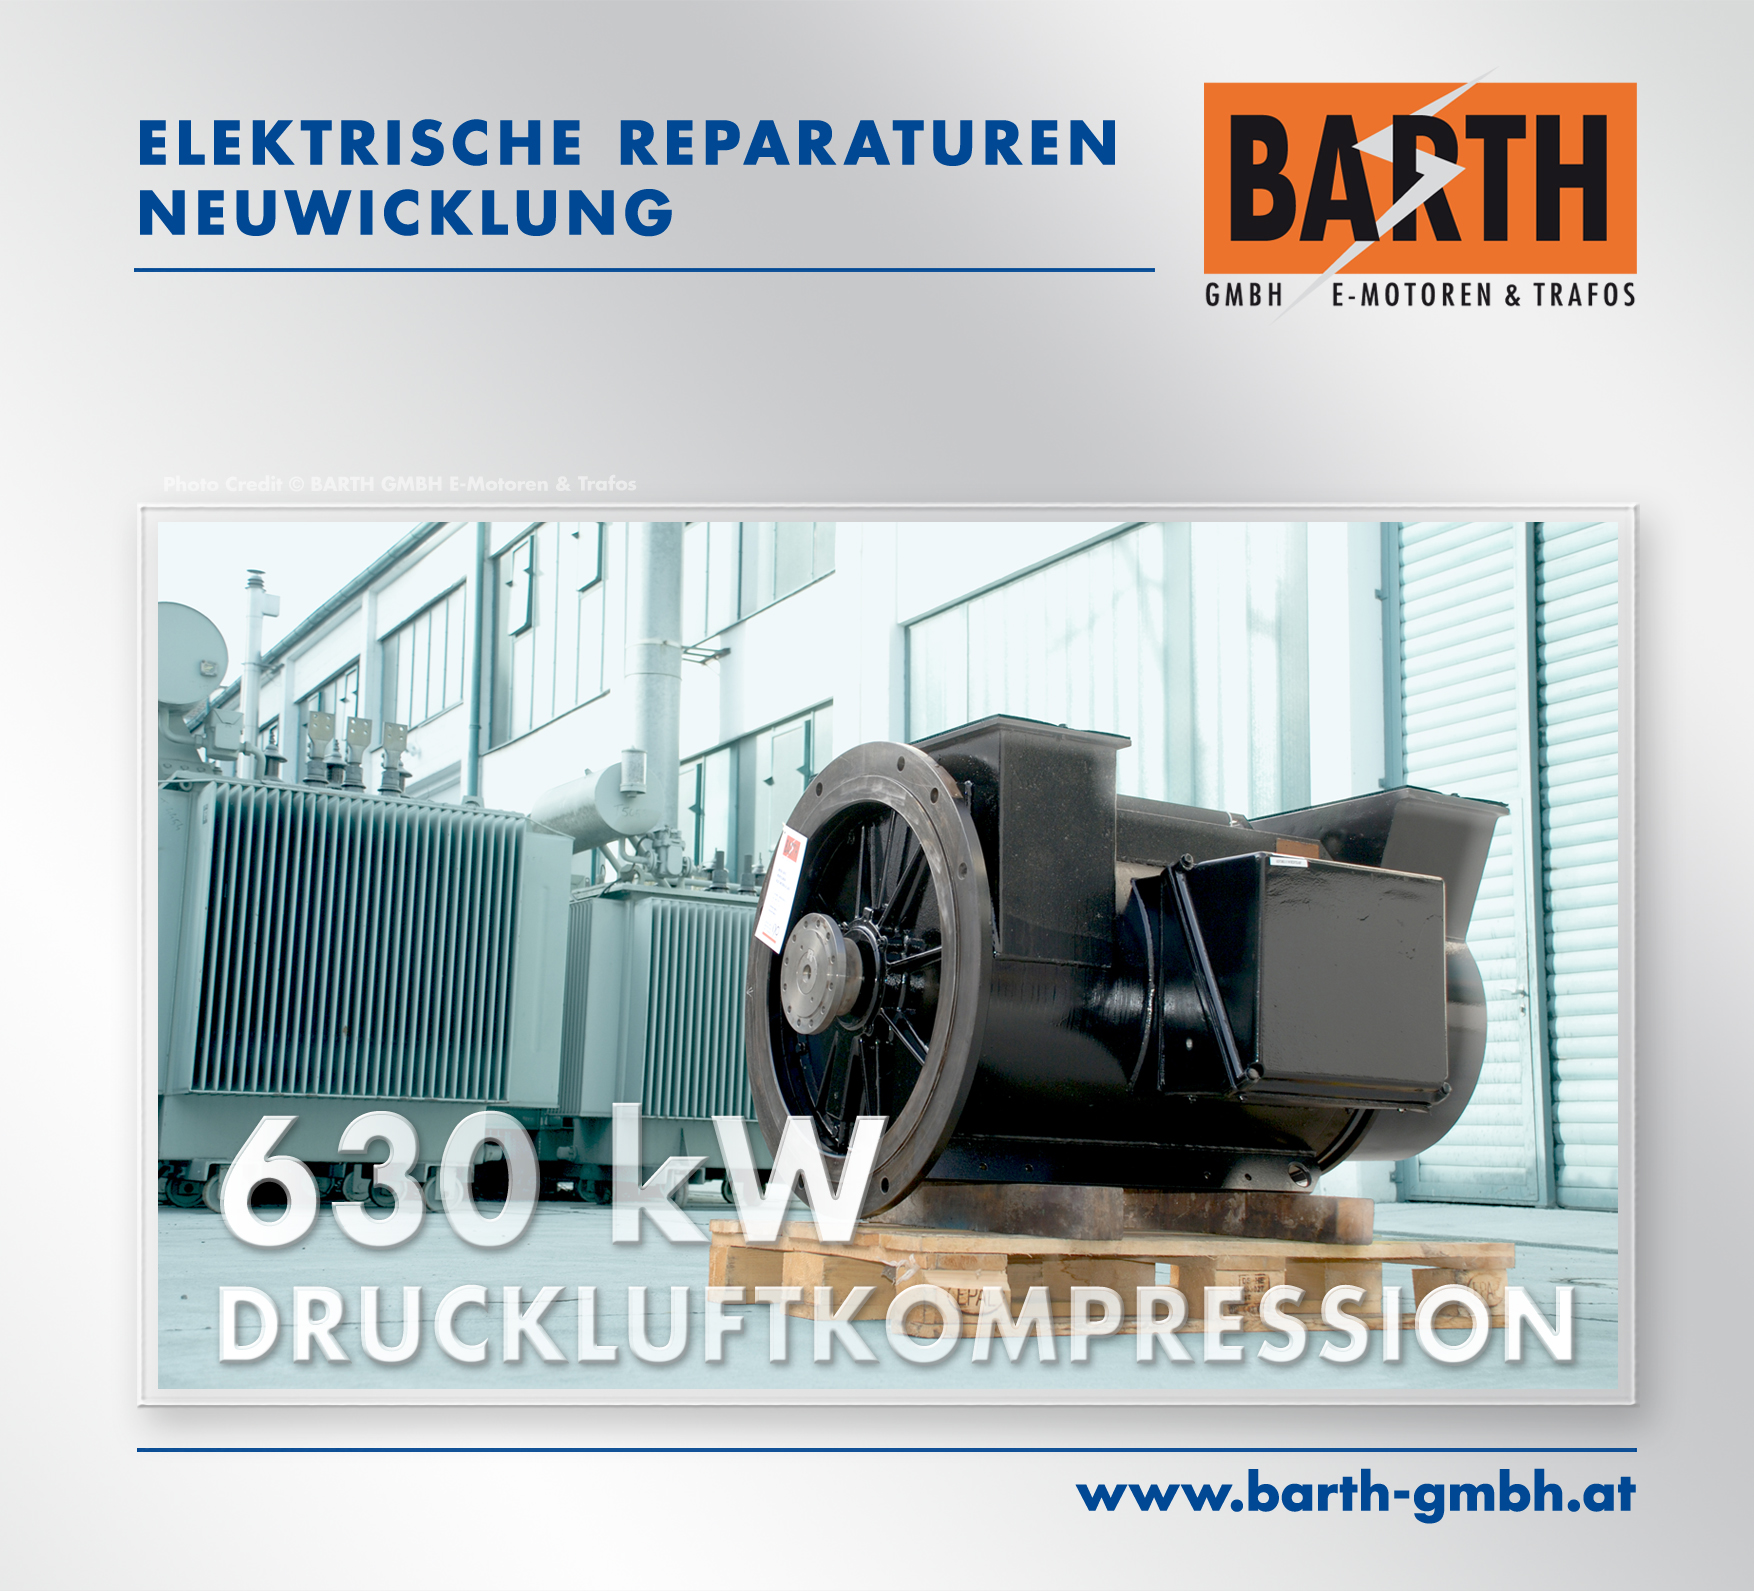 Elektrische Reparatur | Neuwicklung | 630 kW Antrieb für Druckluftkompression in einem Zentral-Krankenhaus